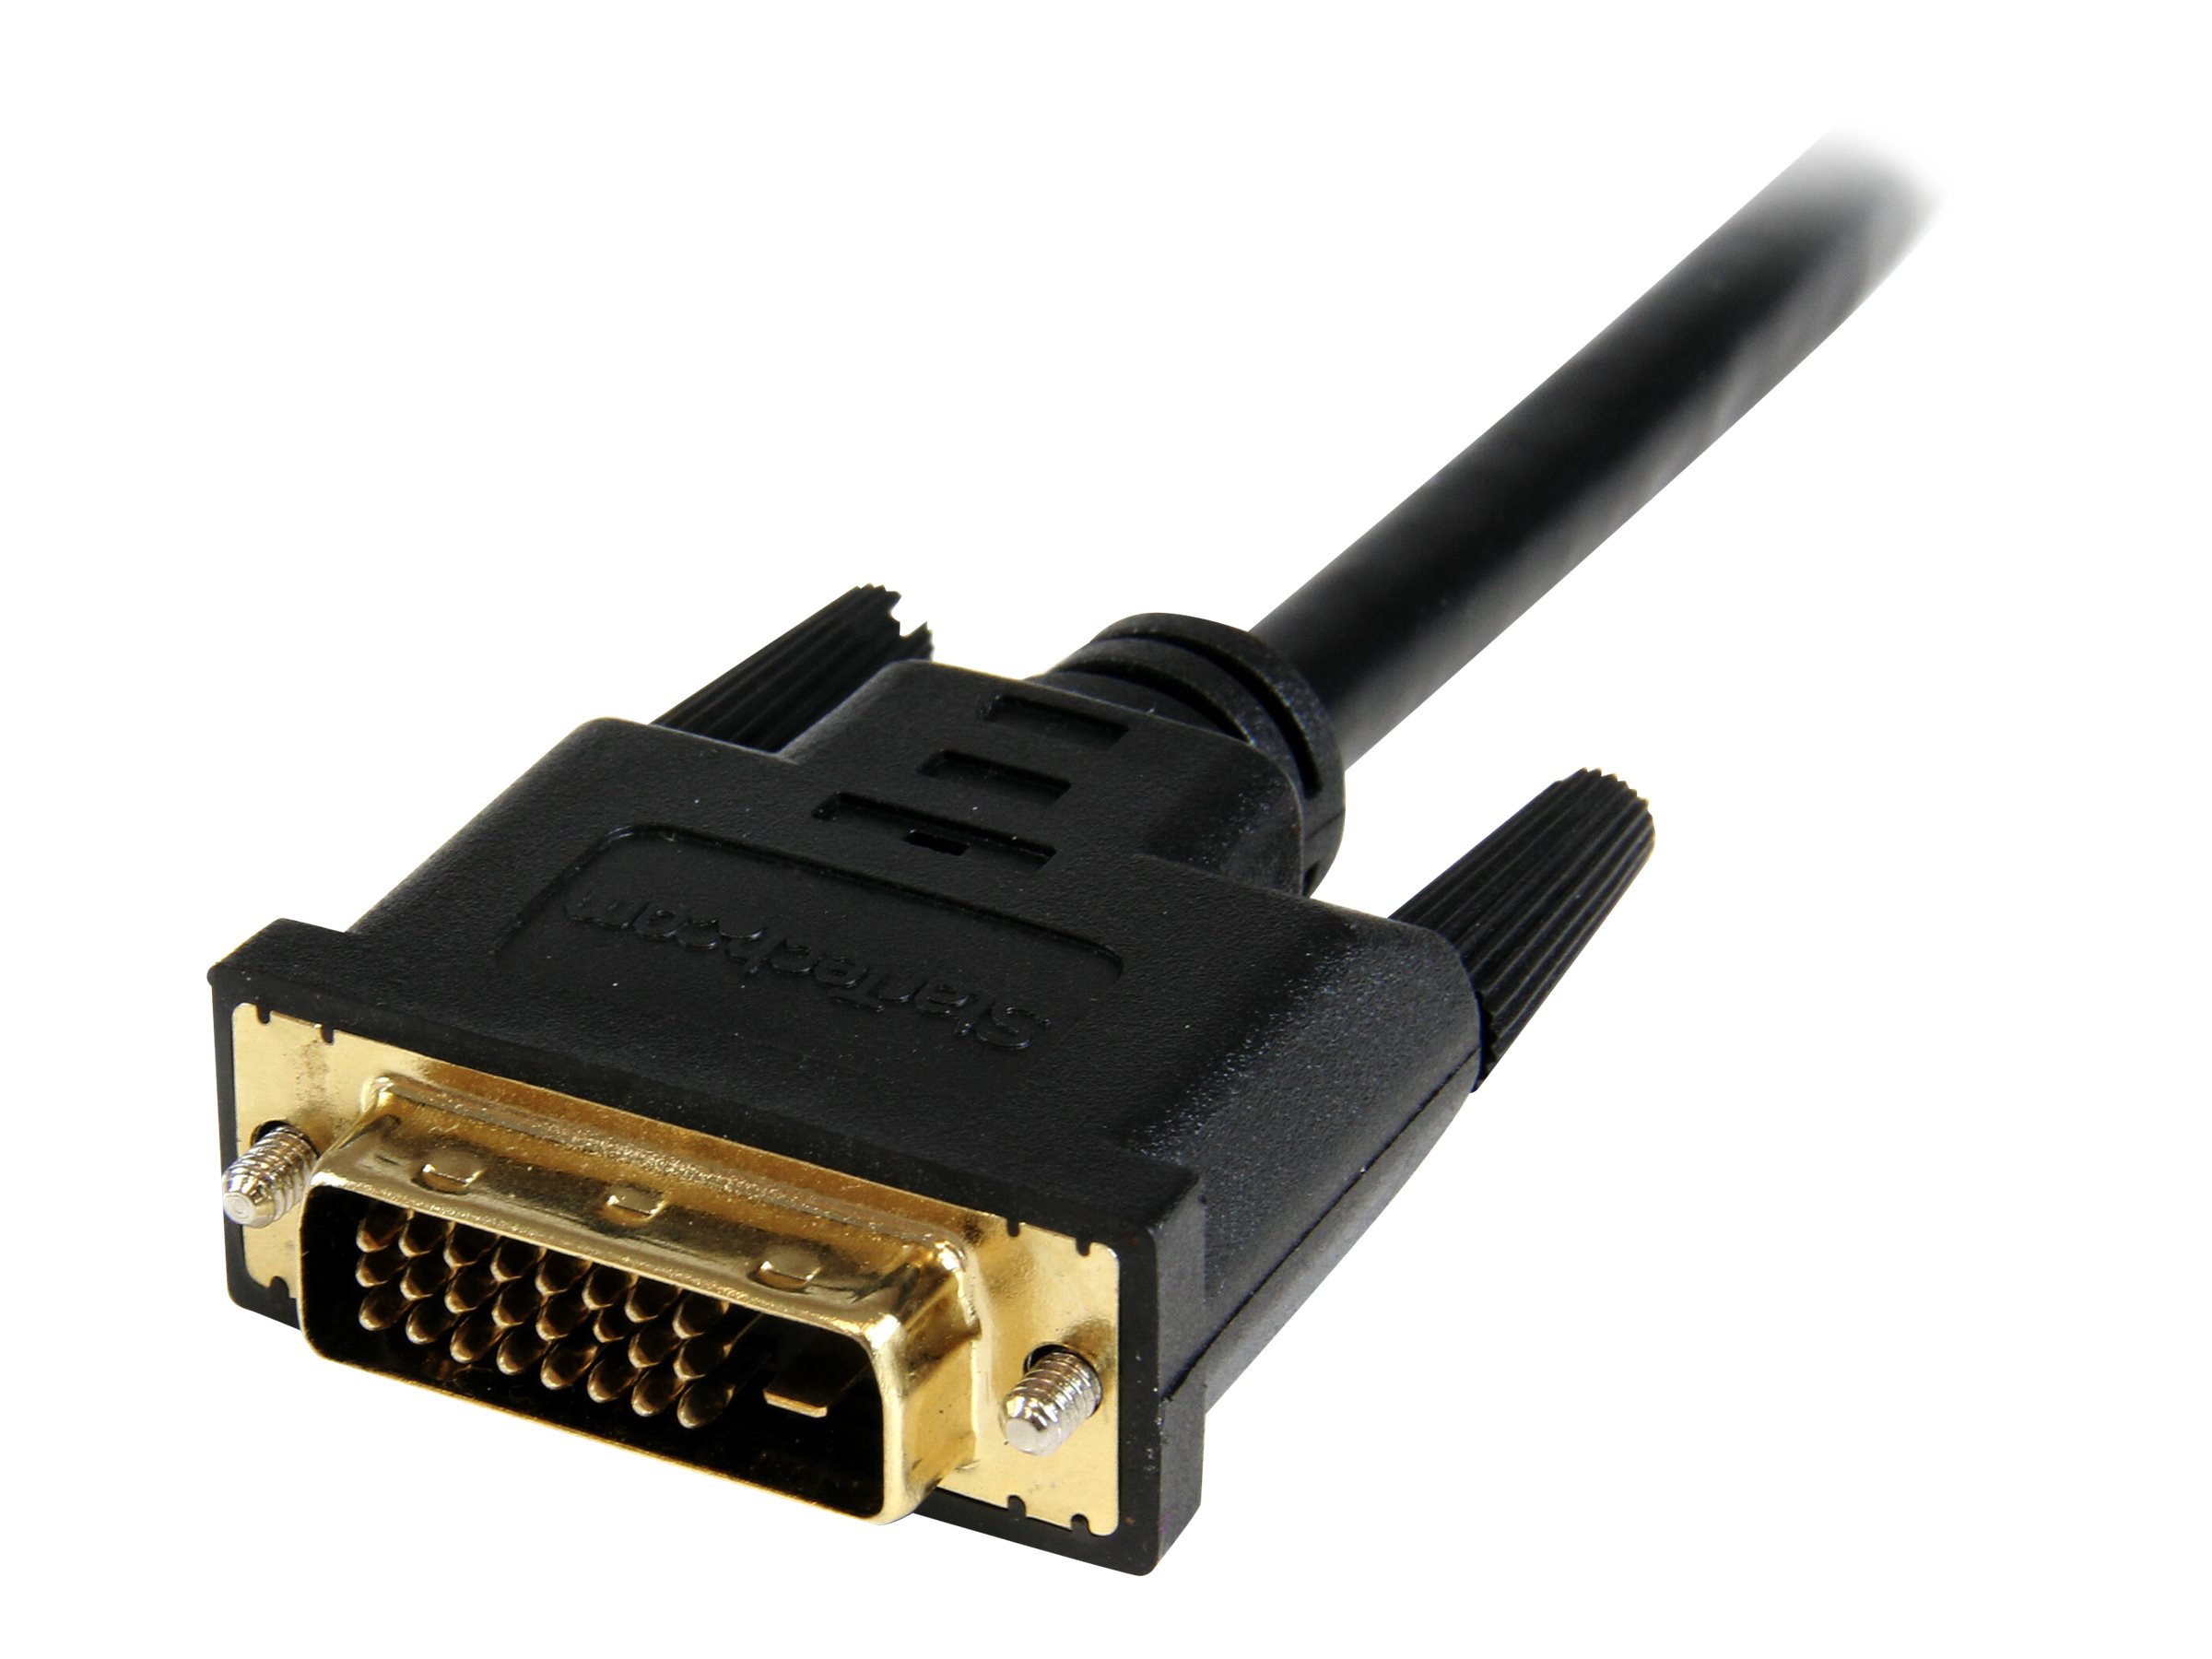 StarTech.com Câble adaptateur vidéo HDMI vers DVI-D de 20 cm - M/M (HDDVIFM8IN) - Adaptateur vidéo - HDMI femelle pour DVI-D mâle - 20.32 cm - blindé - noir - pour P/N: CDP2HDMM2MB, DP2HDMM2MB, HDDVIMM3, HDMM1MP, HDMM2MP, HDMM3MP, HDPMM50, MDP2HDMM2MB - HDDVIFM8IN - Câbles HDMI